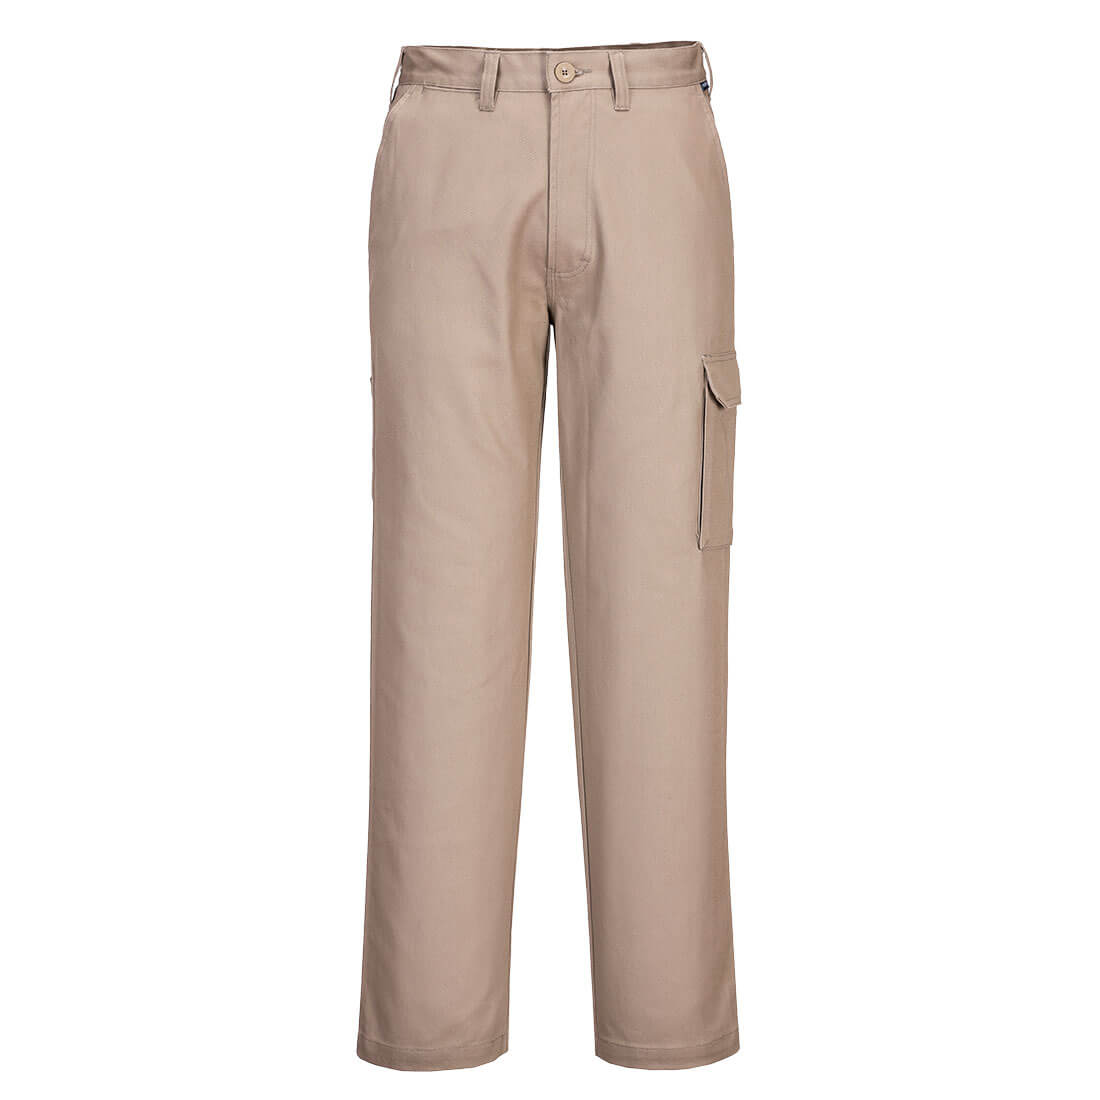 Cotton Cargo Pants Khaki - MP700 Front